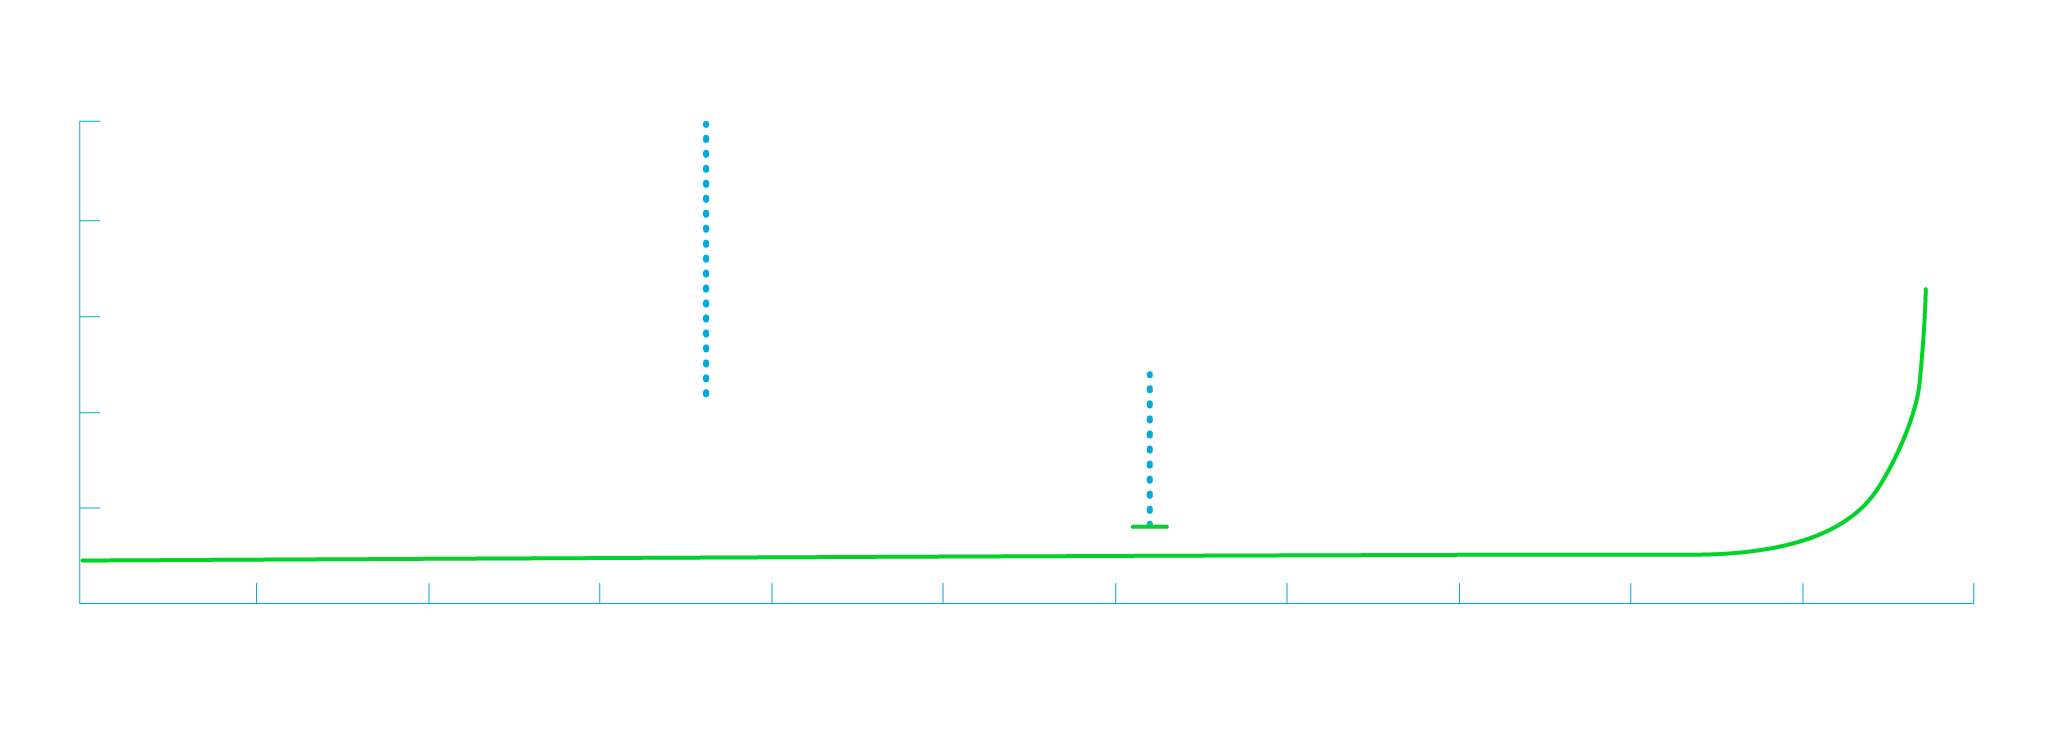 process-page-rapid-digitization-chart